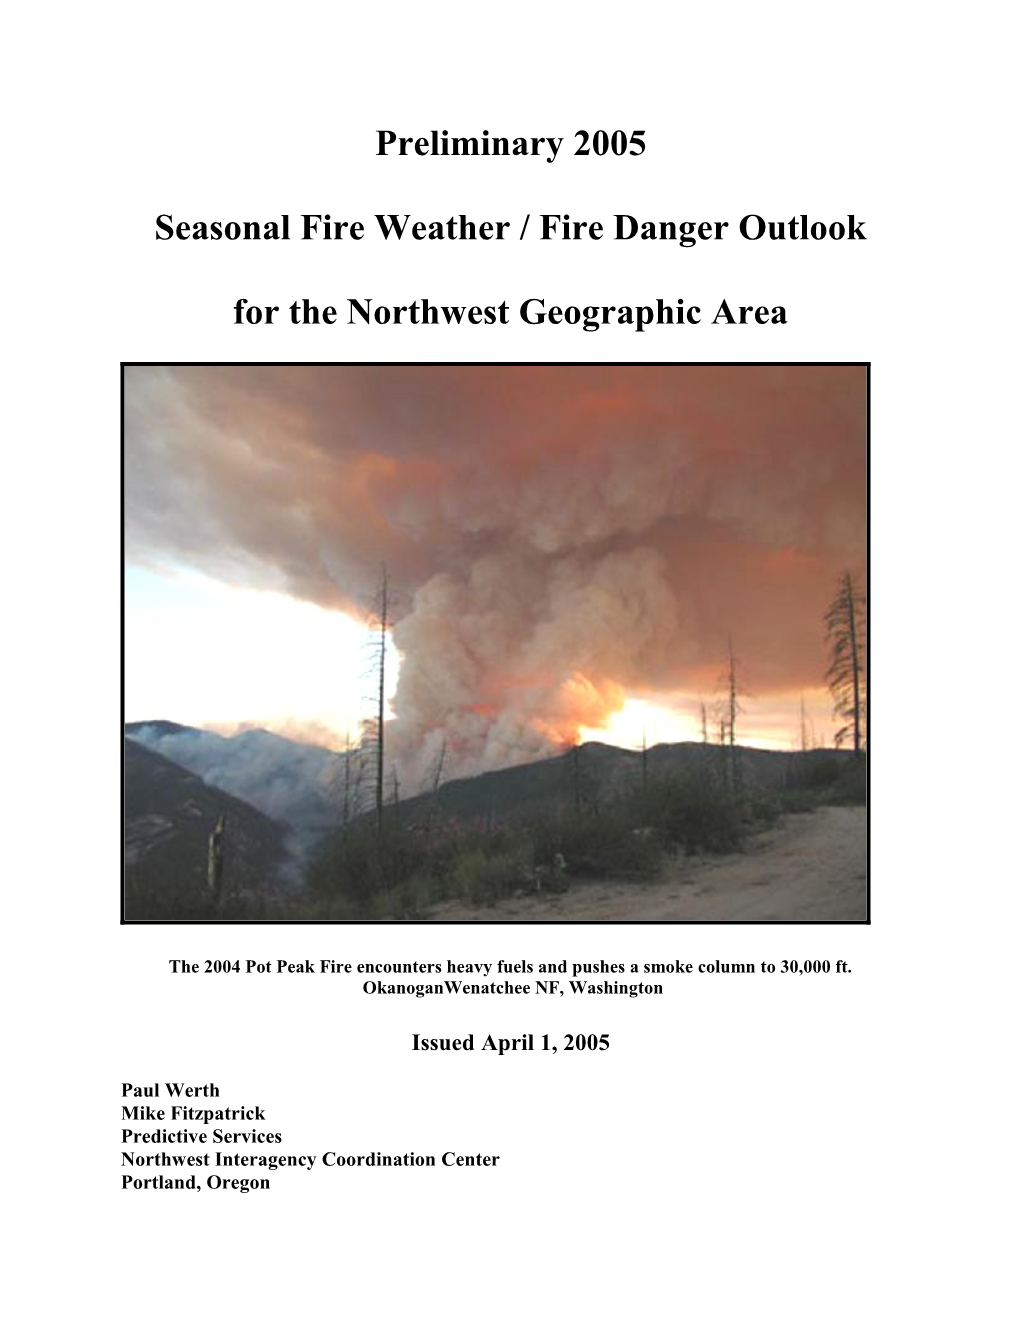 Seasonal Fire Weather / Fire Danger Outlook